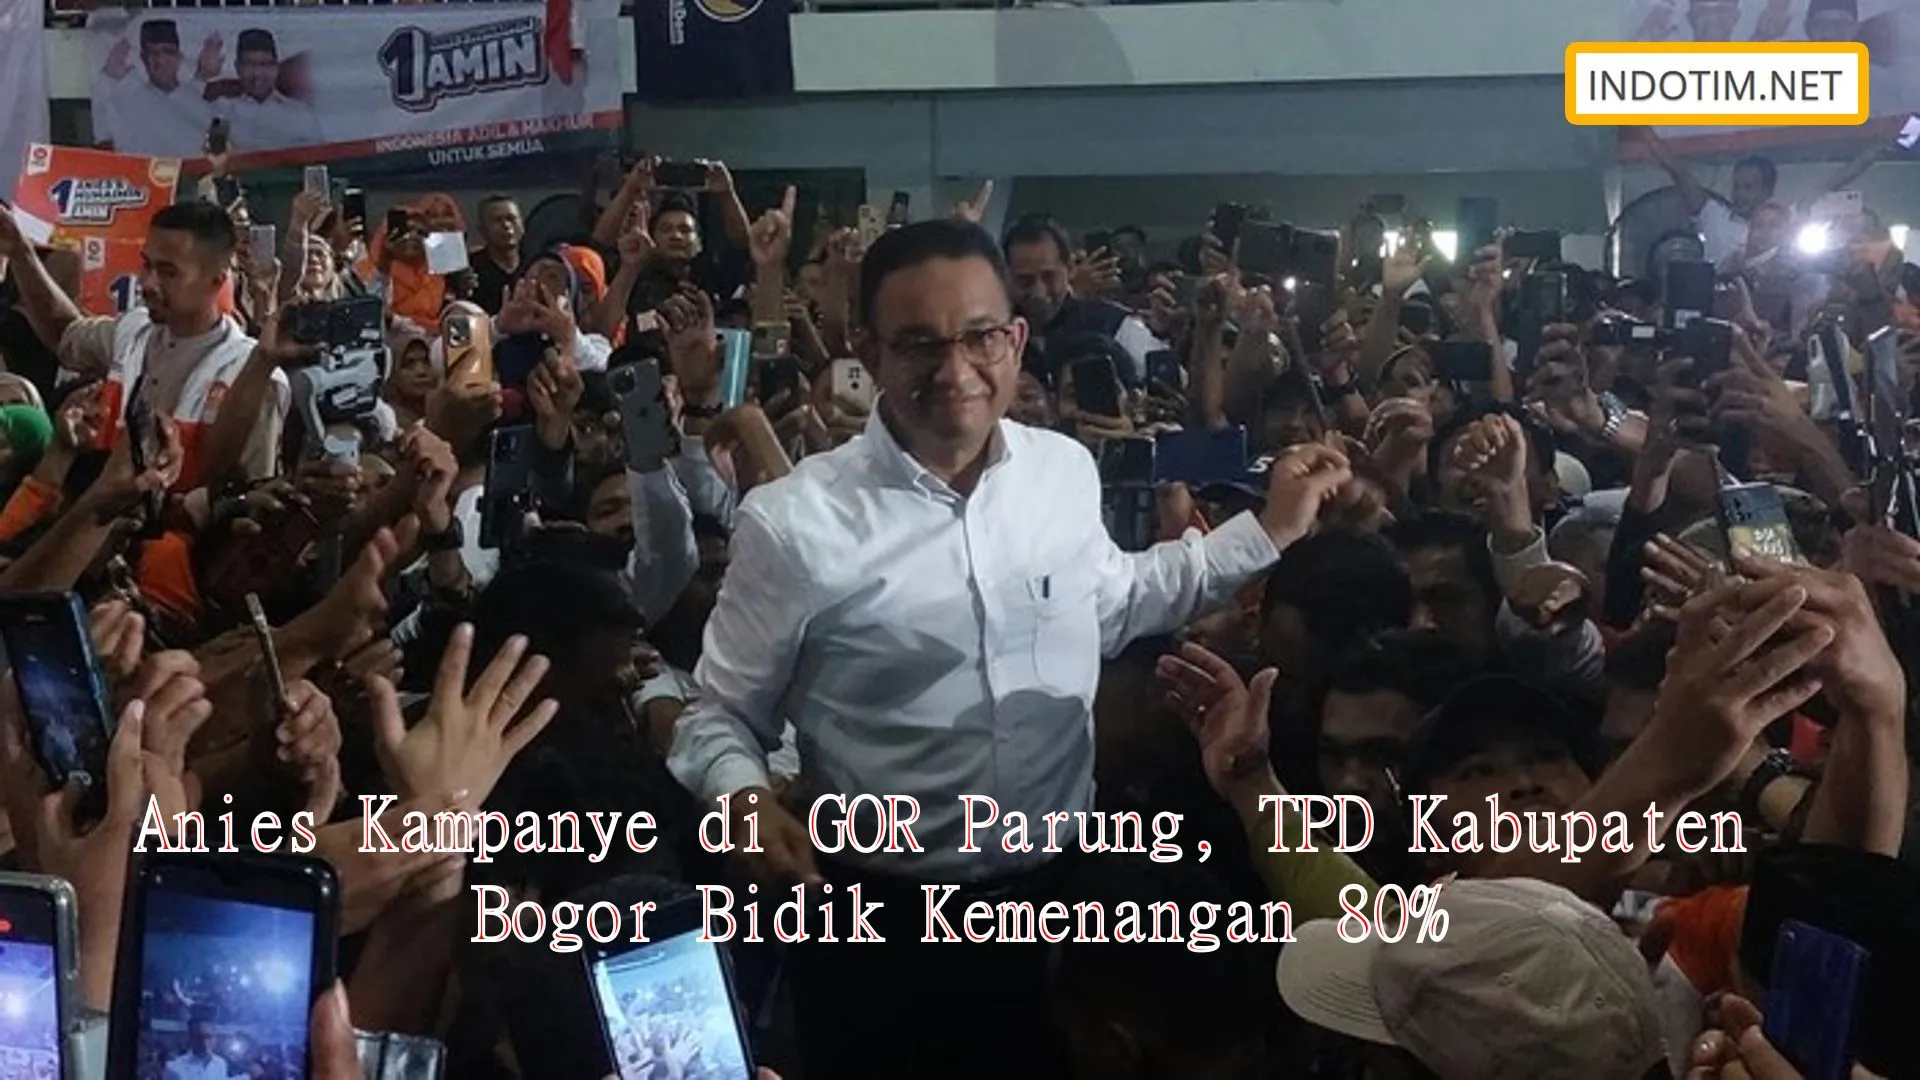 Anies Kampanye di GOR Parung, TPD Kabupaten Bogor Bidik Kemenangan 80%